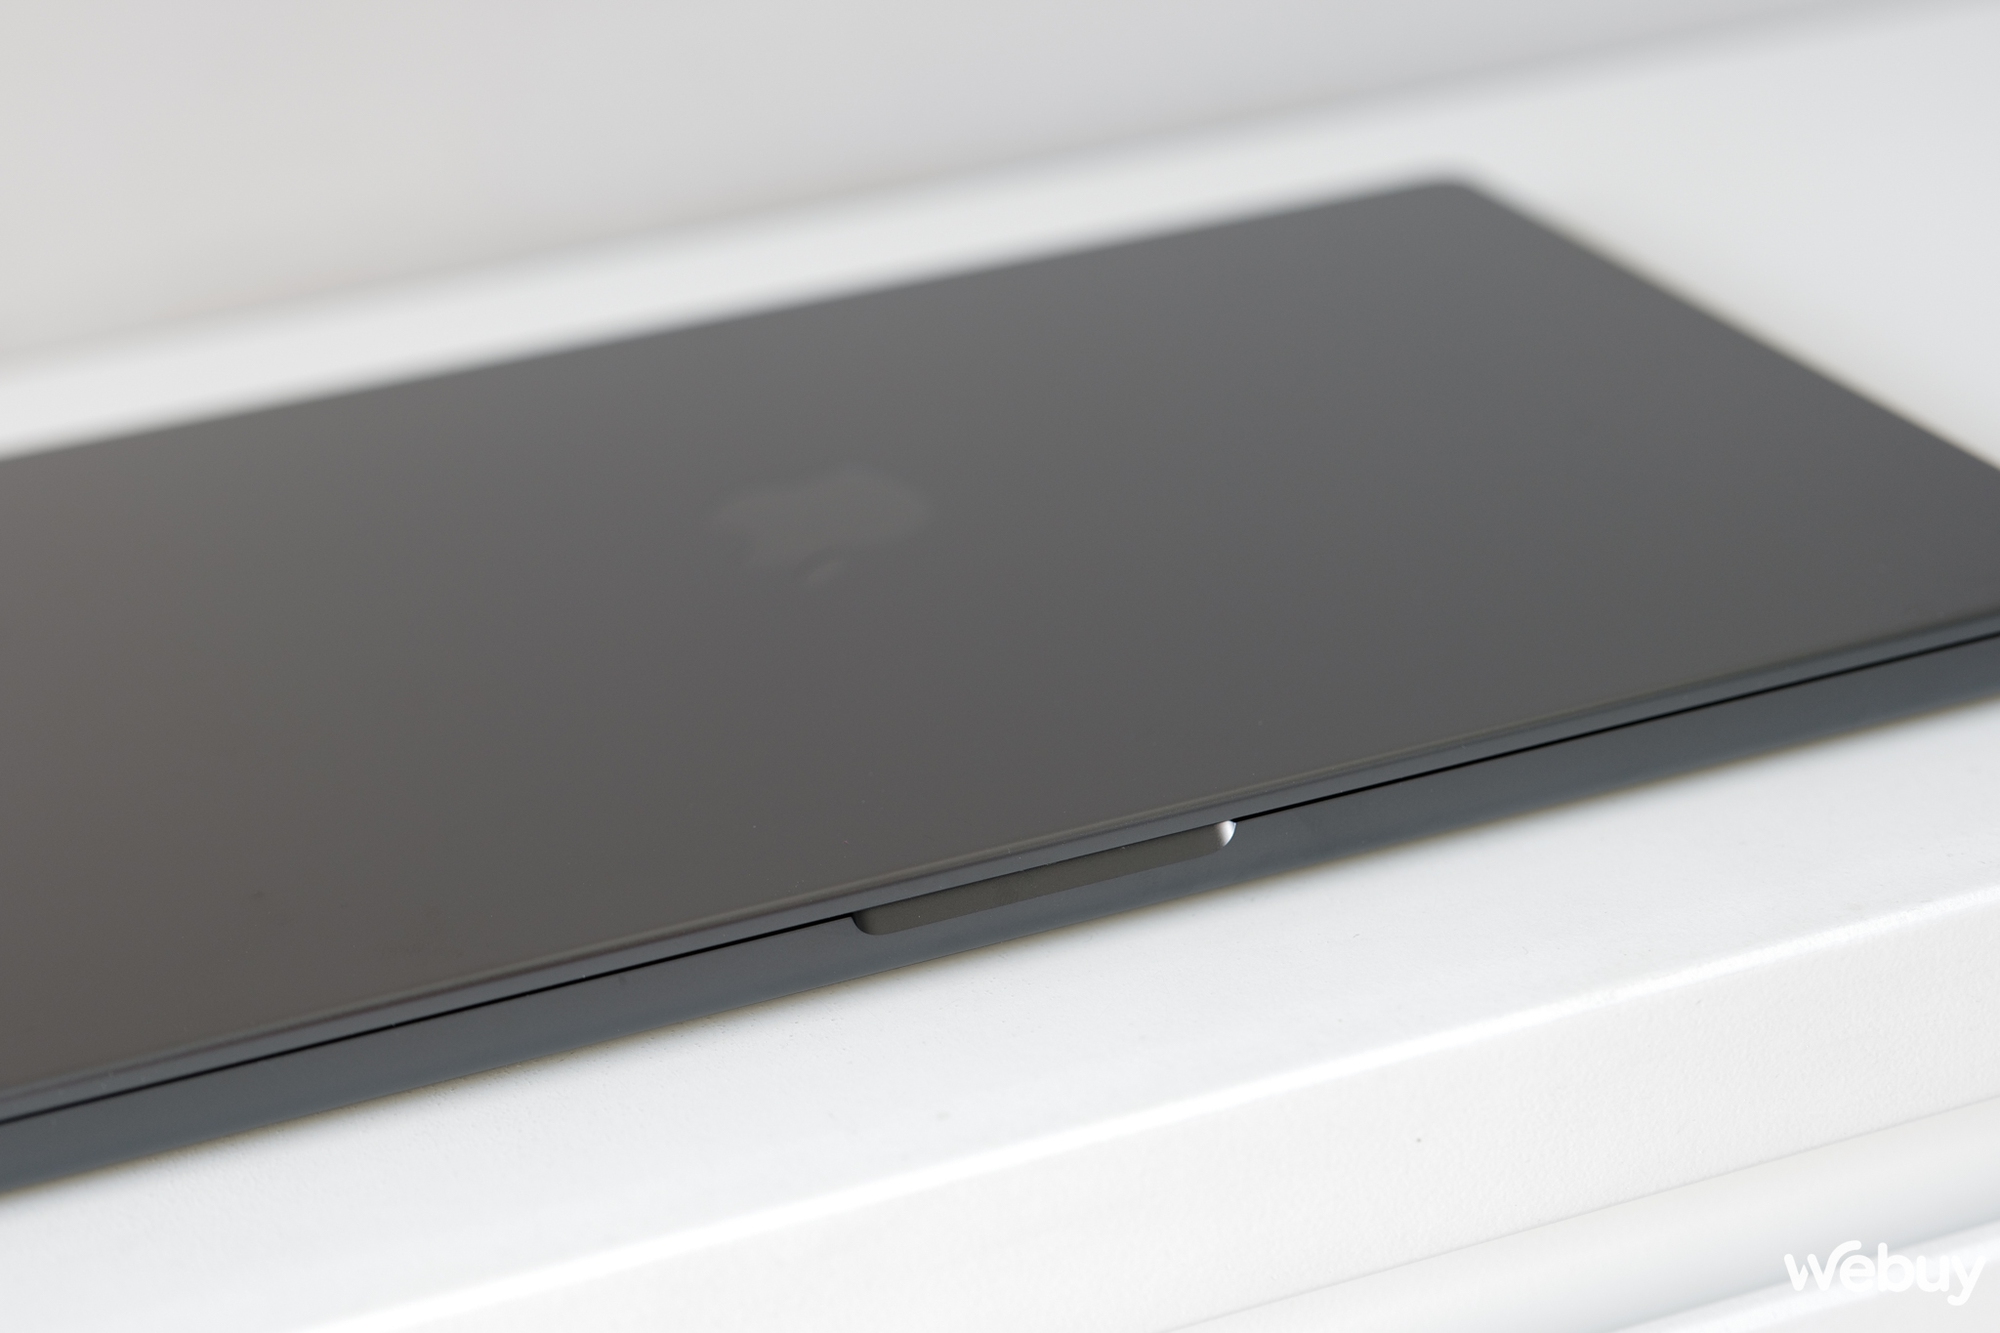 Mở hộp bộ đôi MacBook Pro M3 mới: Có thêm màu đen cực đẹp, hiệu năng vô đối, giá chính hãng từ 39.99 triệu đồng- Ảnh 10.